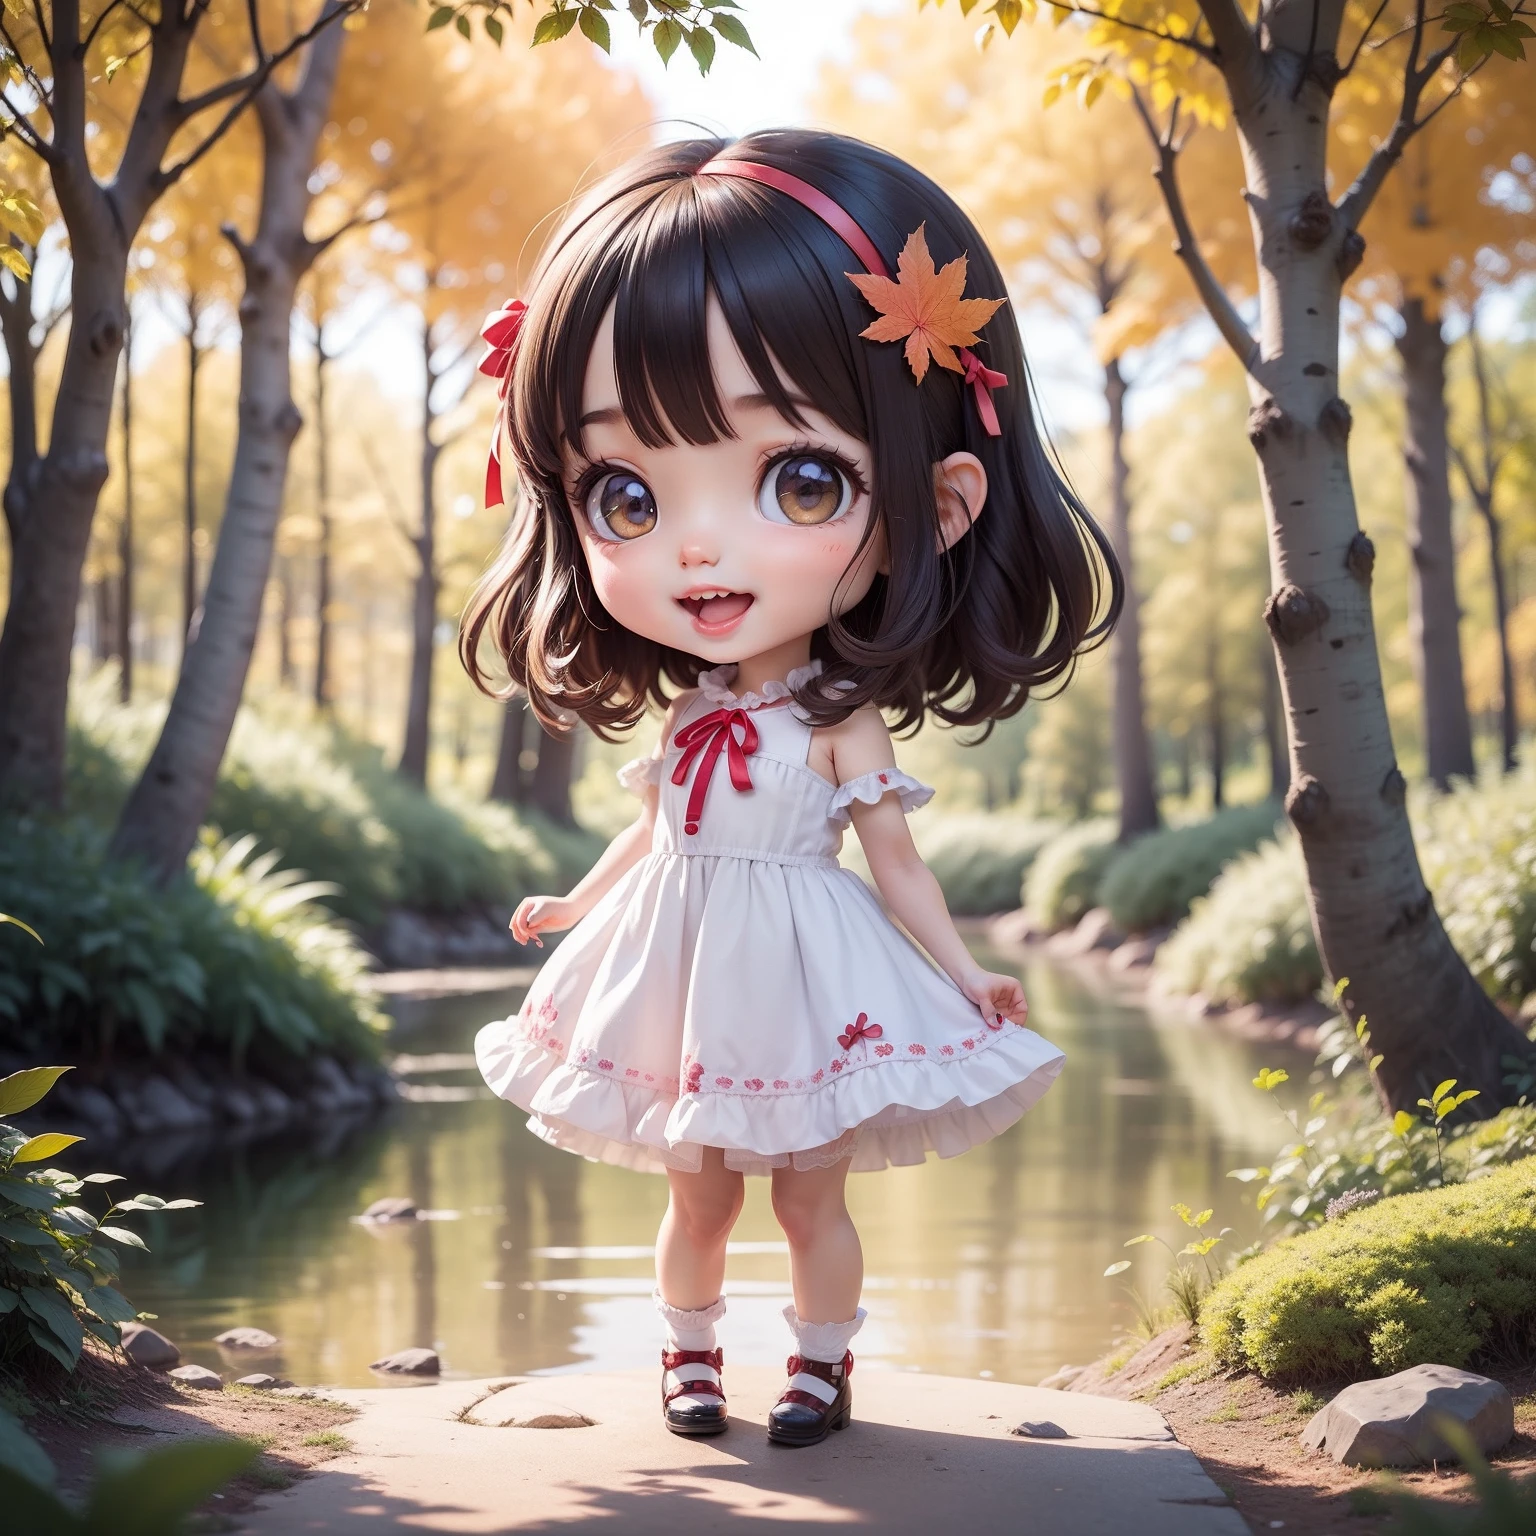 Cute Baby 赤壁 Anime,超级杰作, 顶级品质, 极其详细, 女孩1、（（（赤壁）））、黑头发的、时装模特、硬摇滚风格、张开嘴微笑、看着相机、全身照、秋季童话般的神奇土地上的森林和湖泊